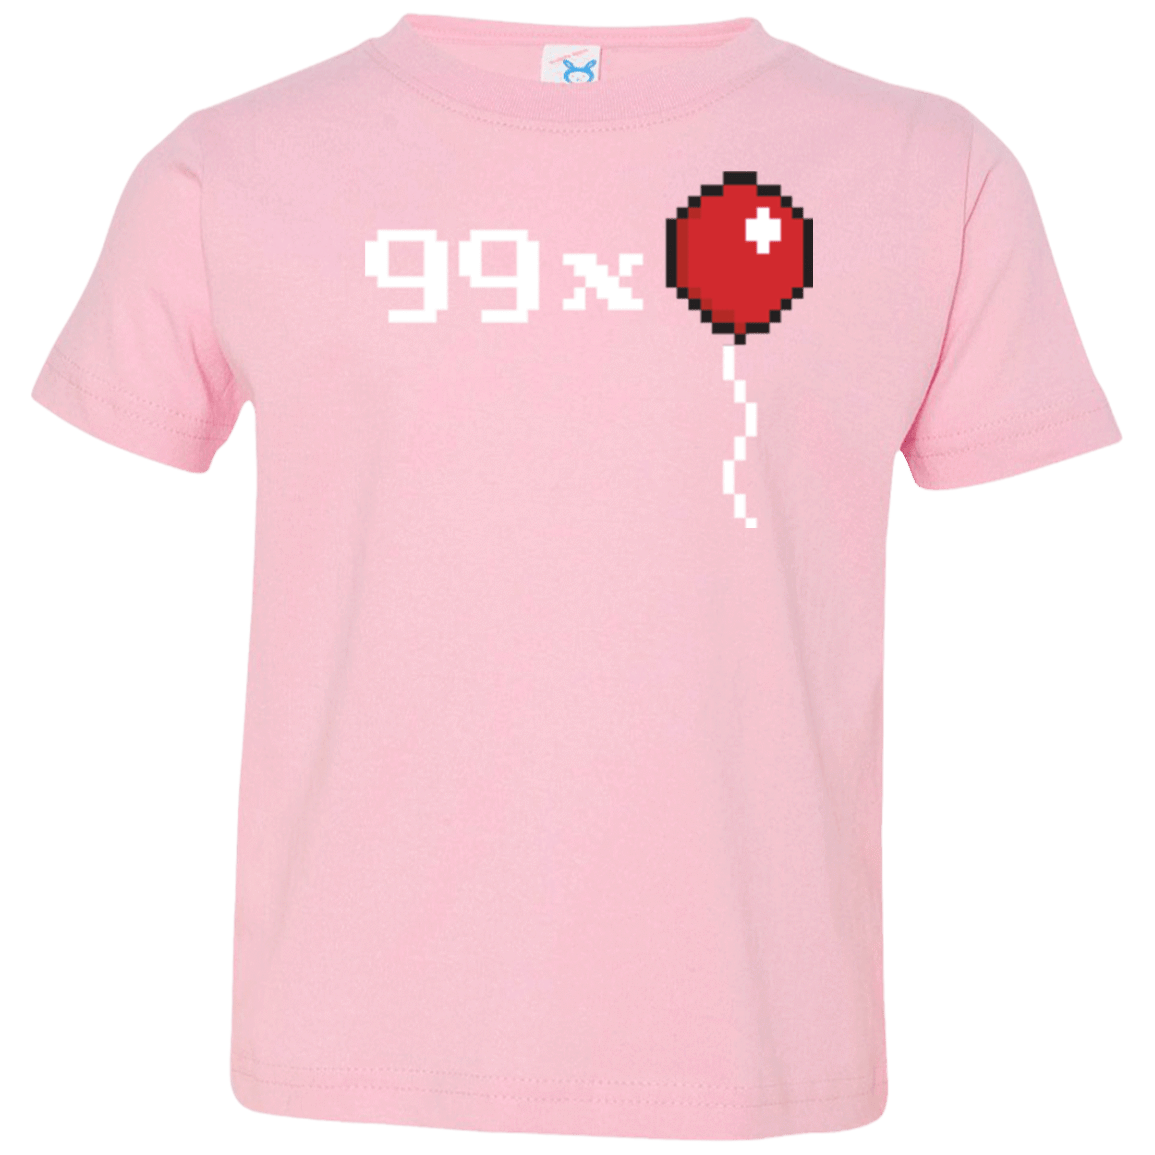 T-Shirts Pink / 2T 99x Balloon Toddler Premium T-Shirt